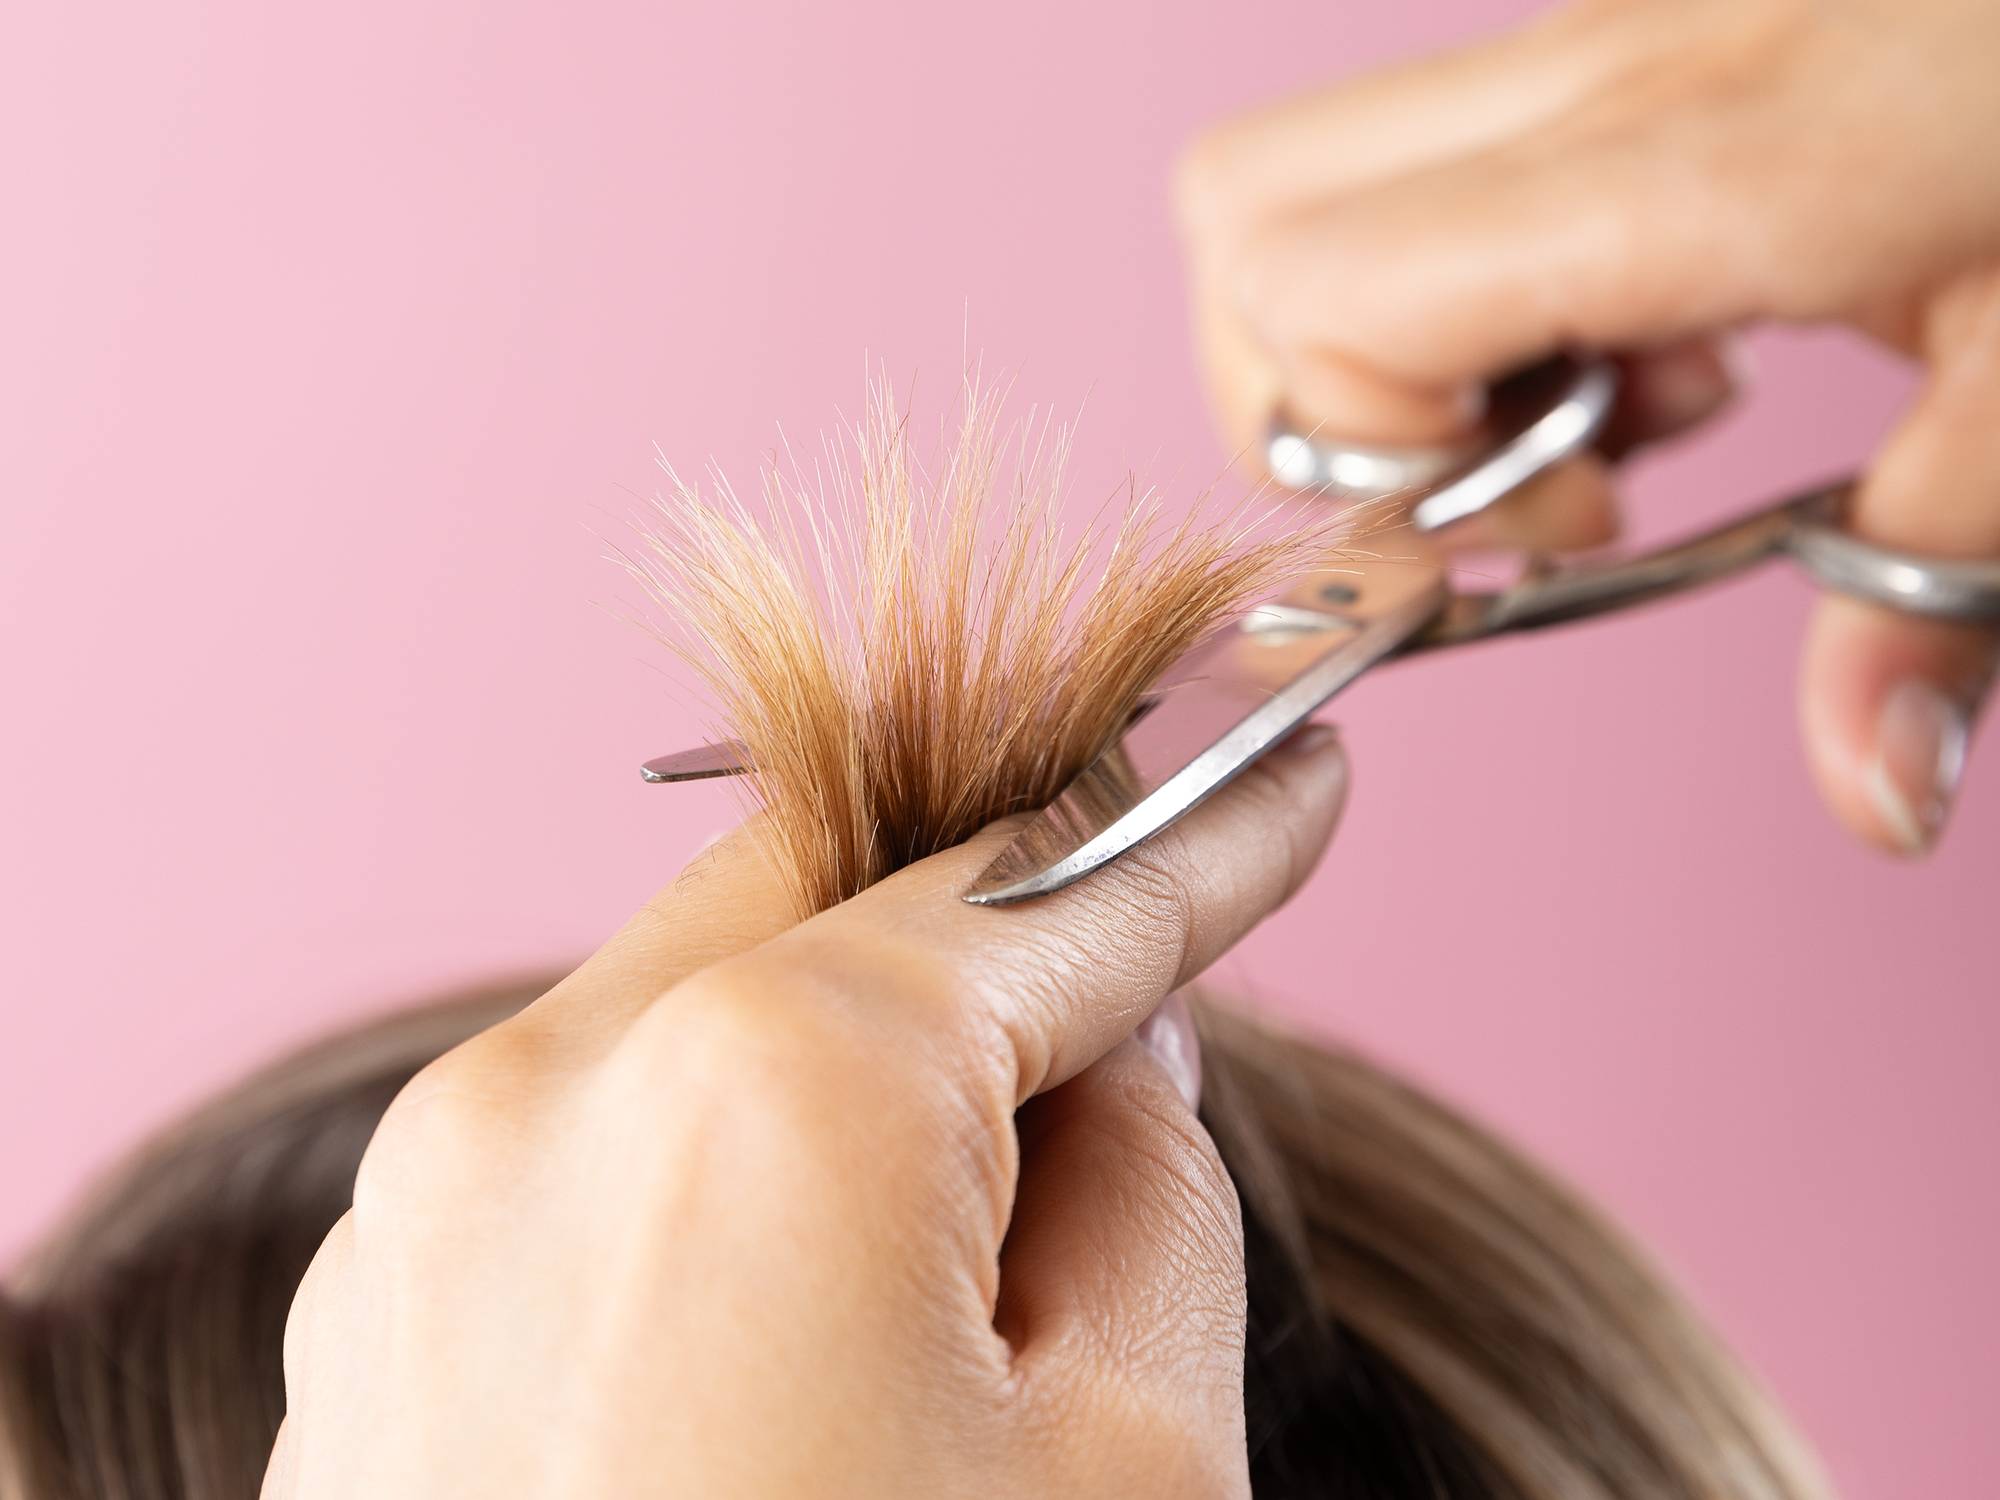 Et nærbilde av håret til Anita, hvor vi også ser en frisørs hender, med en saks, som skal til å klippe håret hennes. Bak er den samme rosa bakgrunnen som resten av bildene.